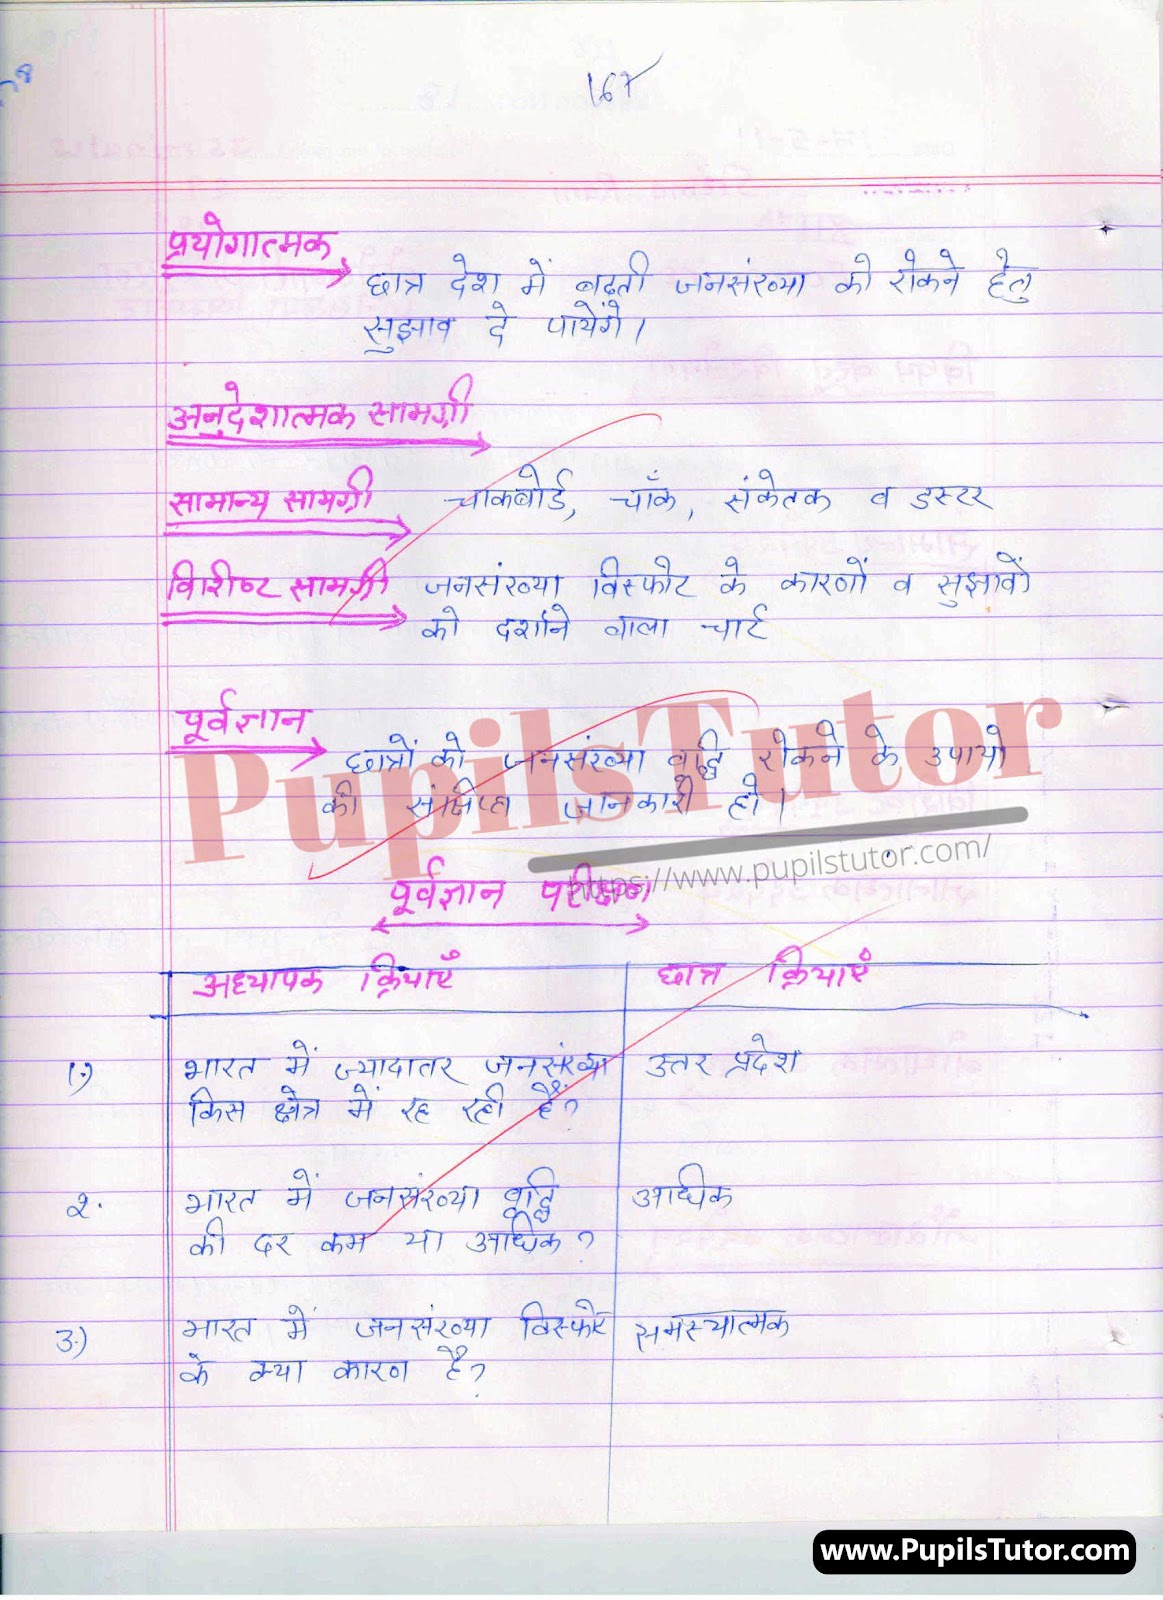 Real School Teaching And Practice Skill Jansankhya Visfot Lesson Plan For B.Ed And Deled In Hindi Free Download PDF And PPT (Power Point Presentation And Slides) | बीएड और डीएलएड के लिए वास्तविक स्कूल शिक्षण और अभ्यास कौशल पर जनसंख्या विस्फ़ोट कक्षा 8वीं से 12 के लेसन प्लान की पीडीऍफ़ और पीपीटी फ्री में डाउनलोड करे| – (Page And PDF Number 2) – pupilstutor